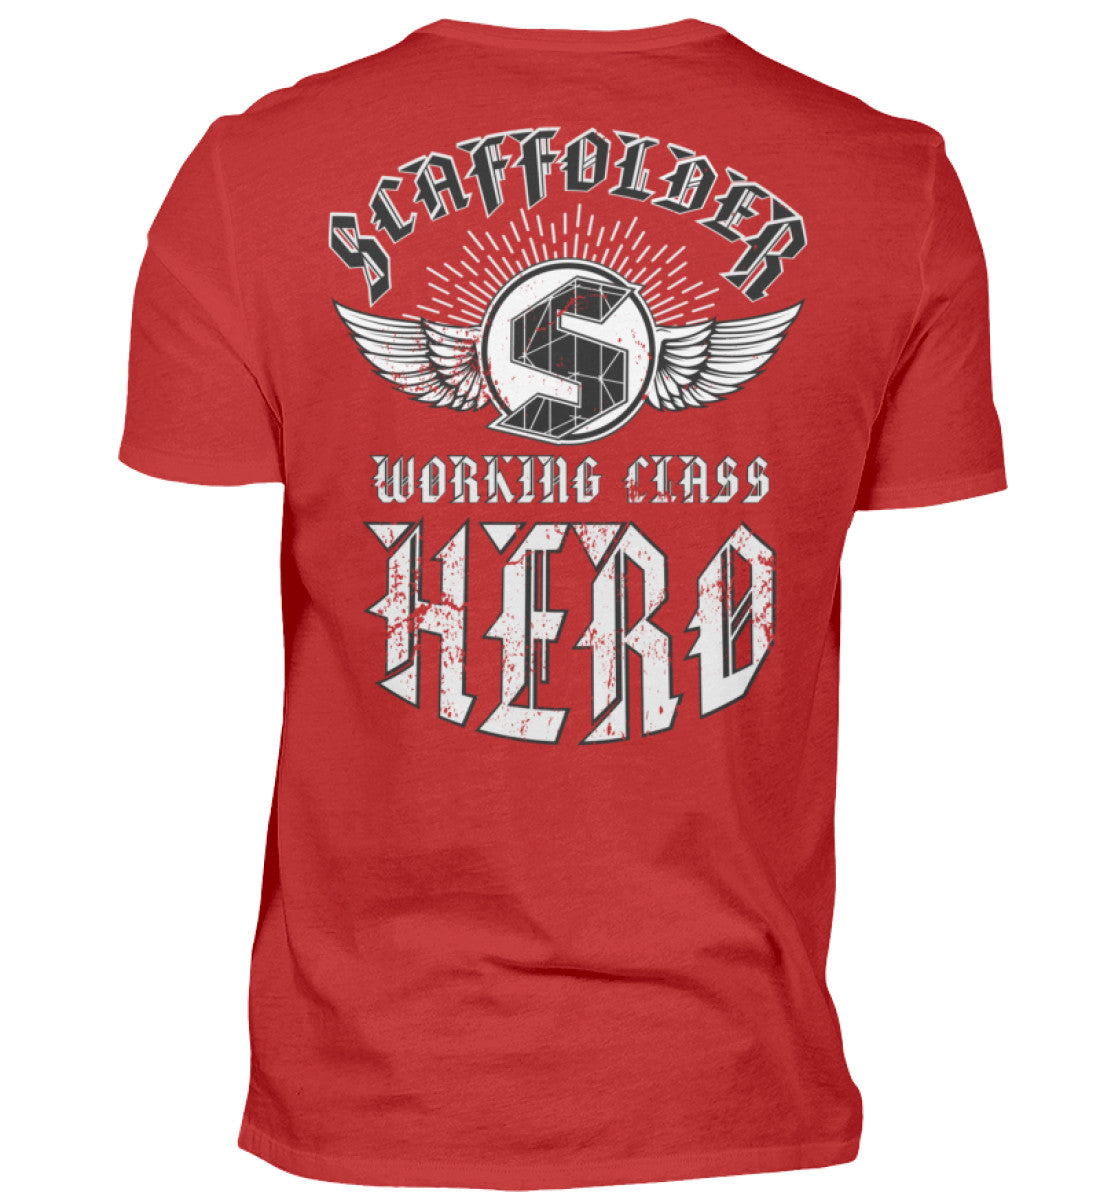 Working Class Hero  - Herren Shirt €29.95 Gerüstbauer - Shop >>